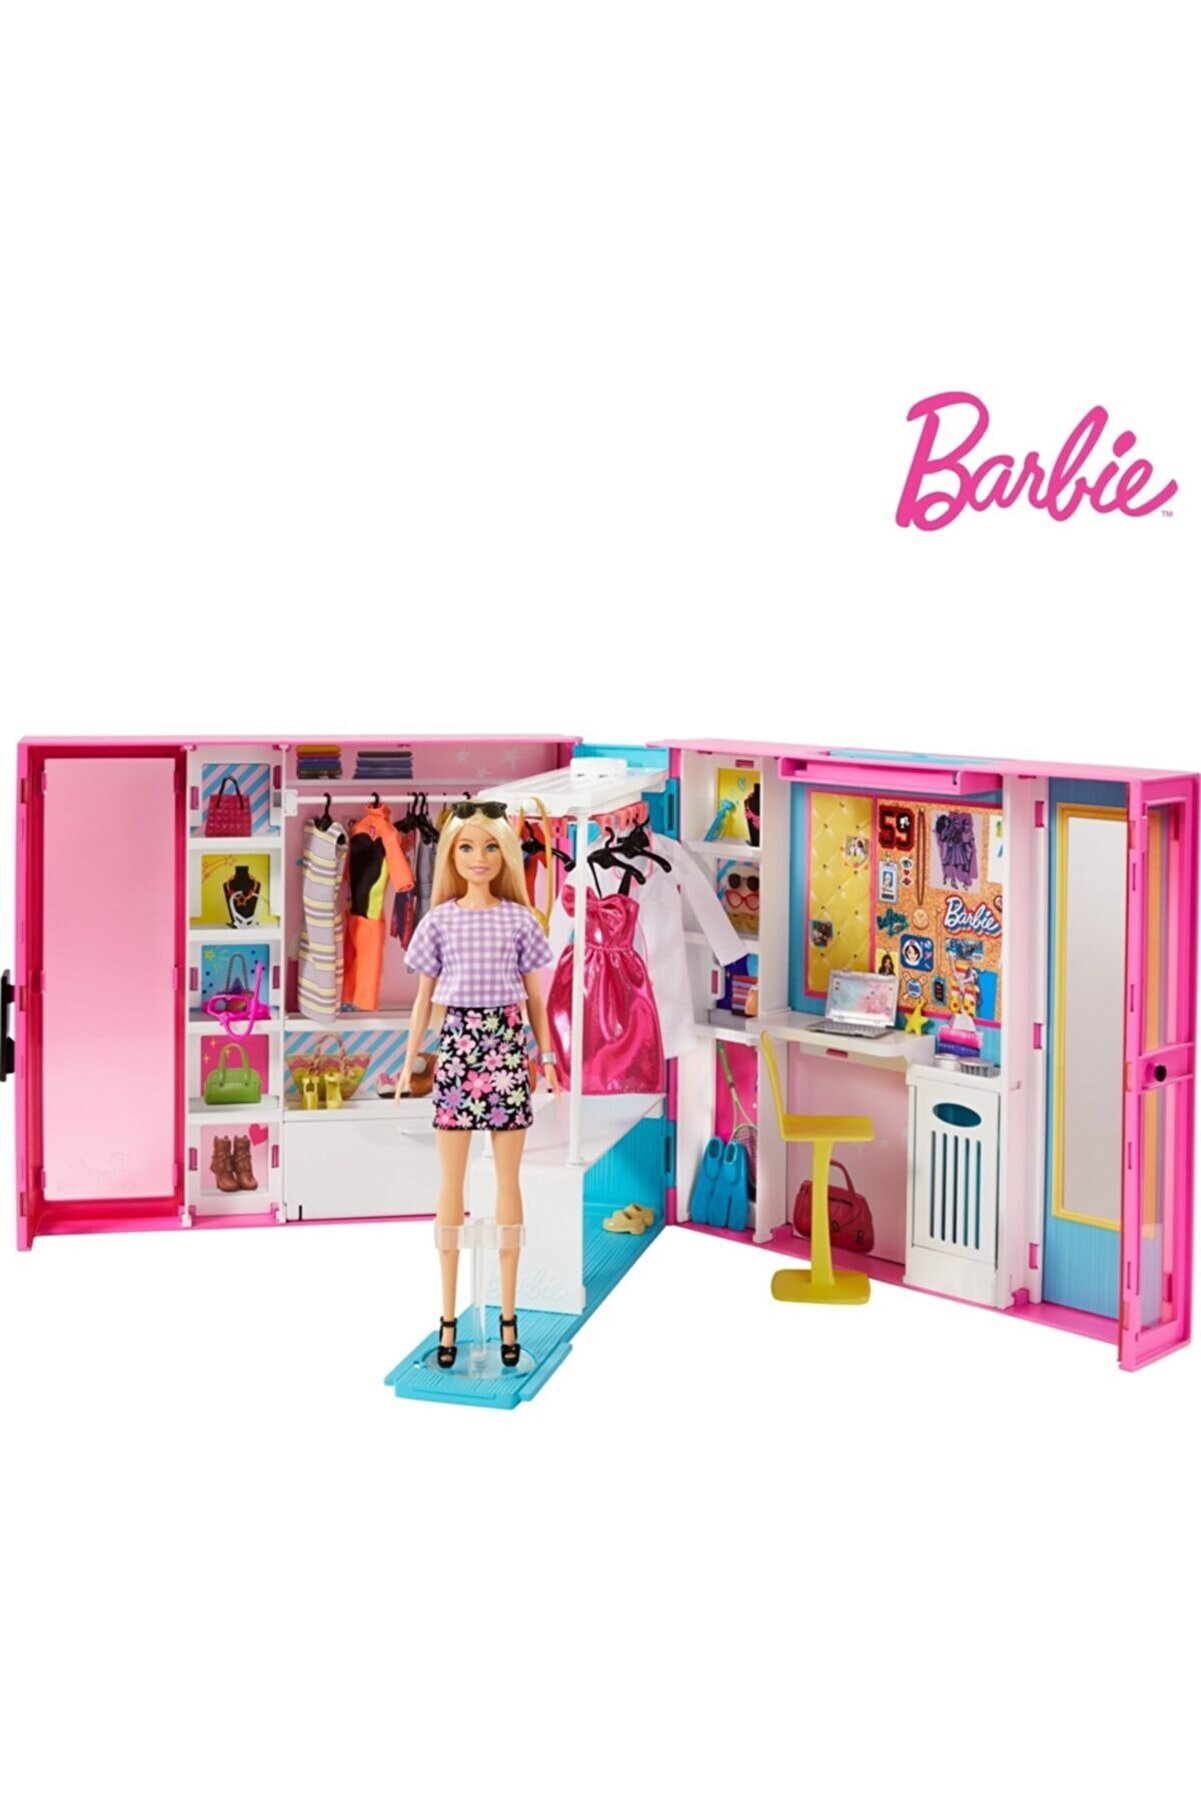 Barbie 'nin Rüya Gardırobu Bebek Ve 25'ten Fazla Aksesuar Ile Gbk10